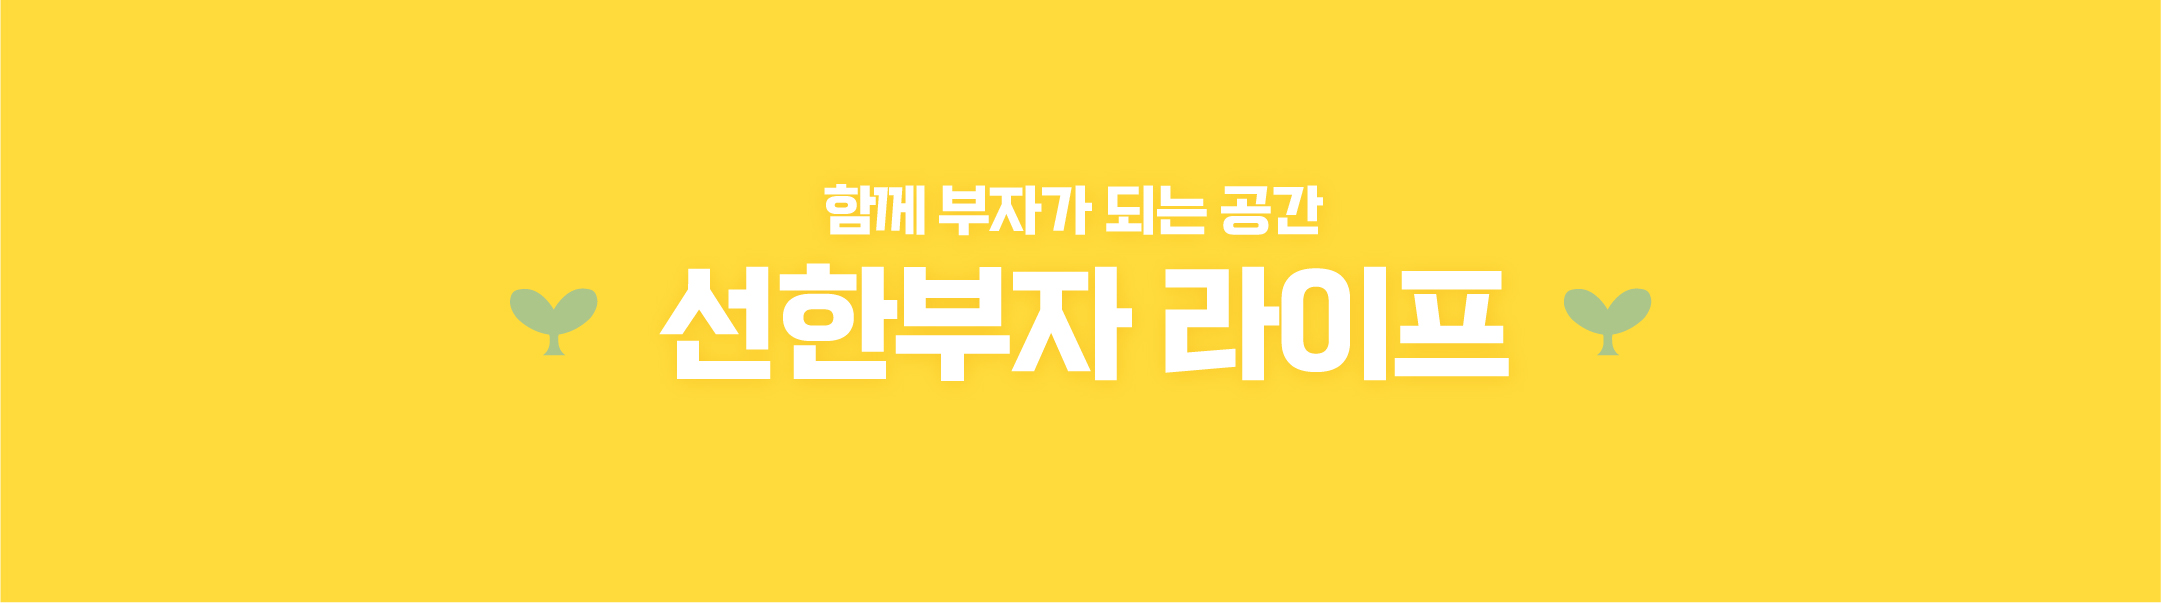 선한부자 라이프 - 경제적자유/온라인자동화수익/투잡부업재테크